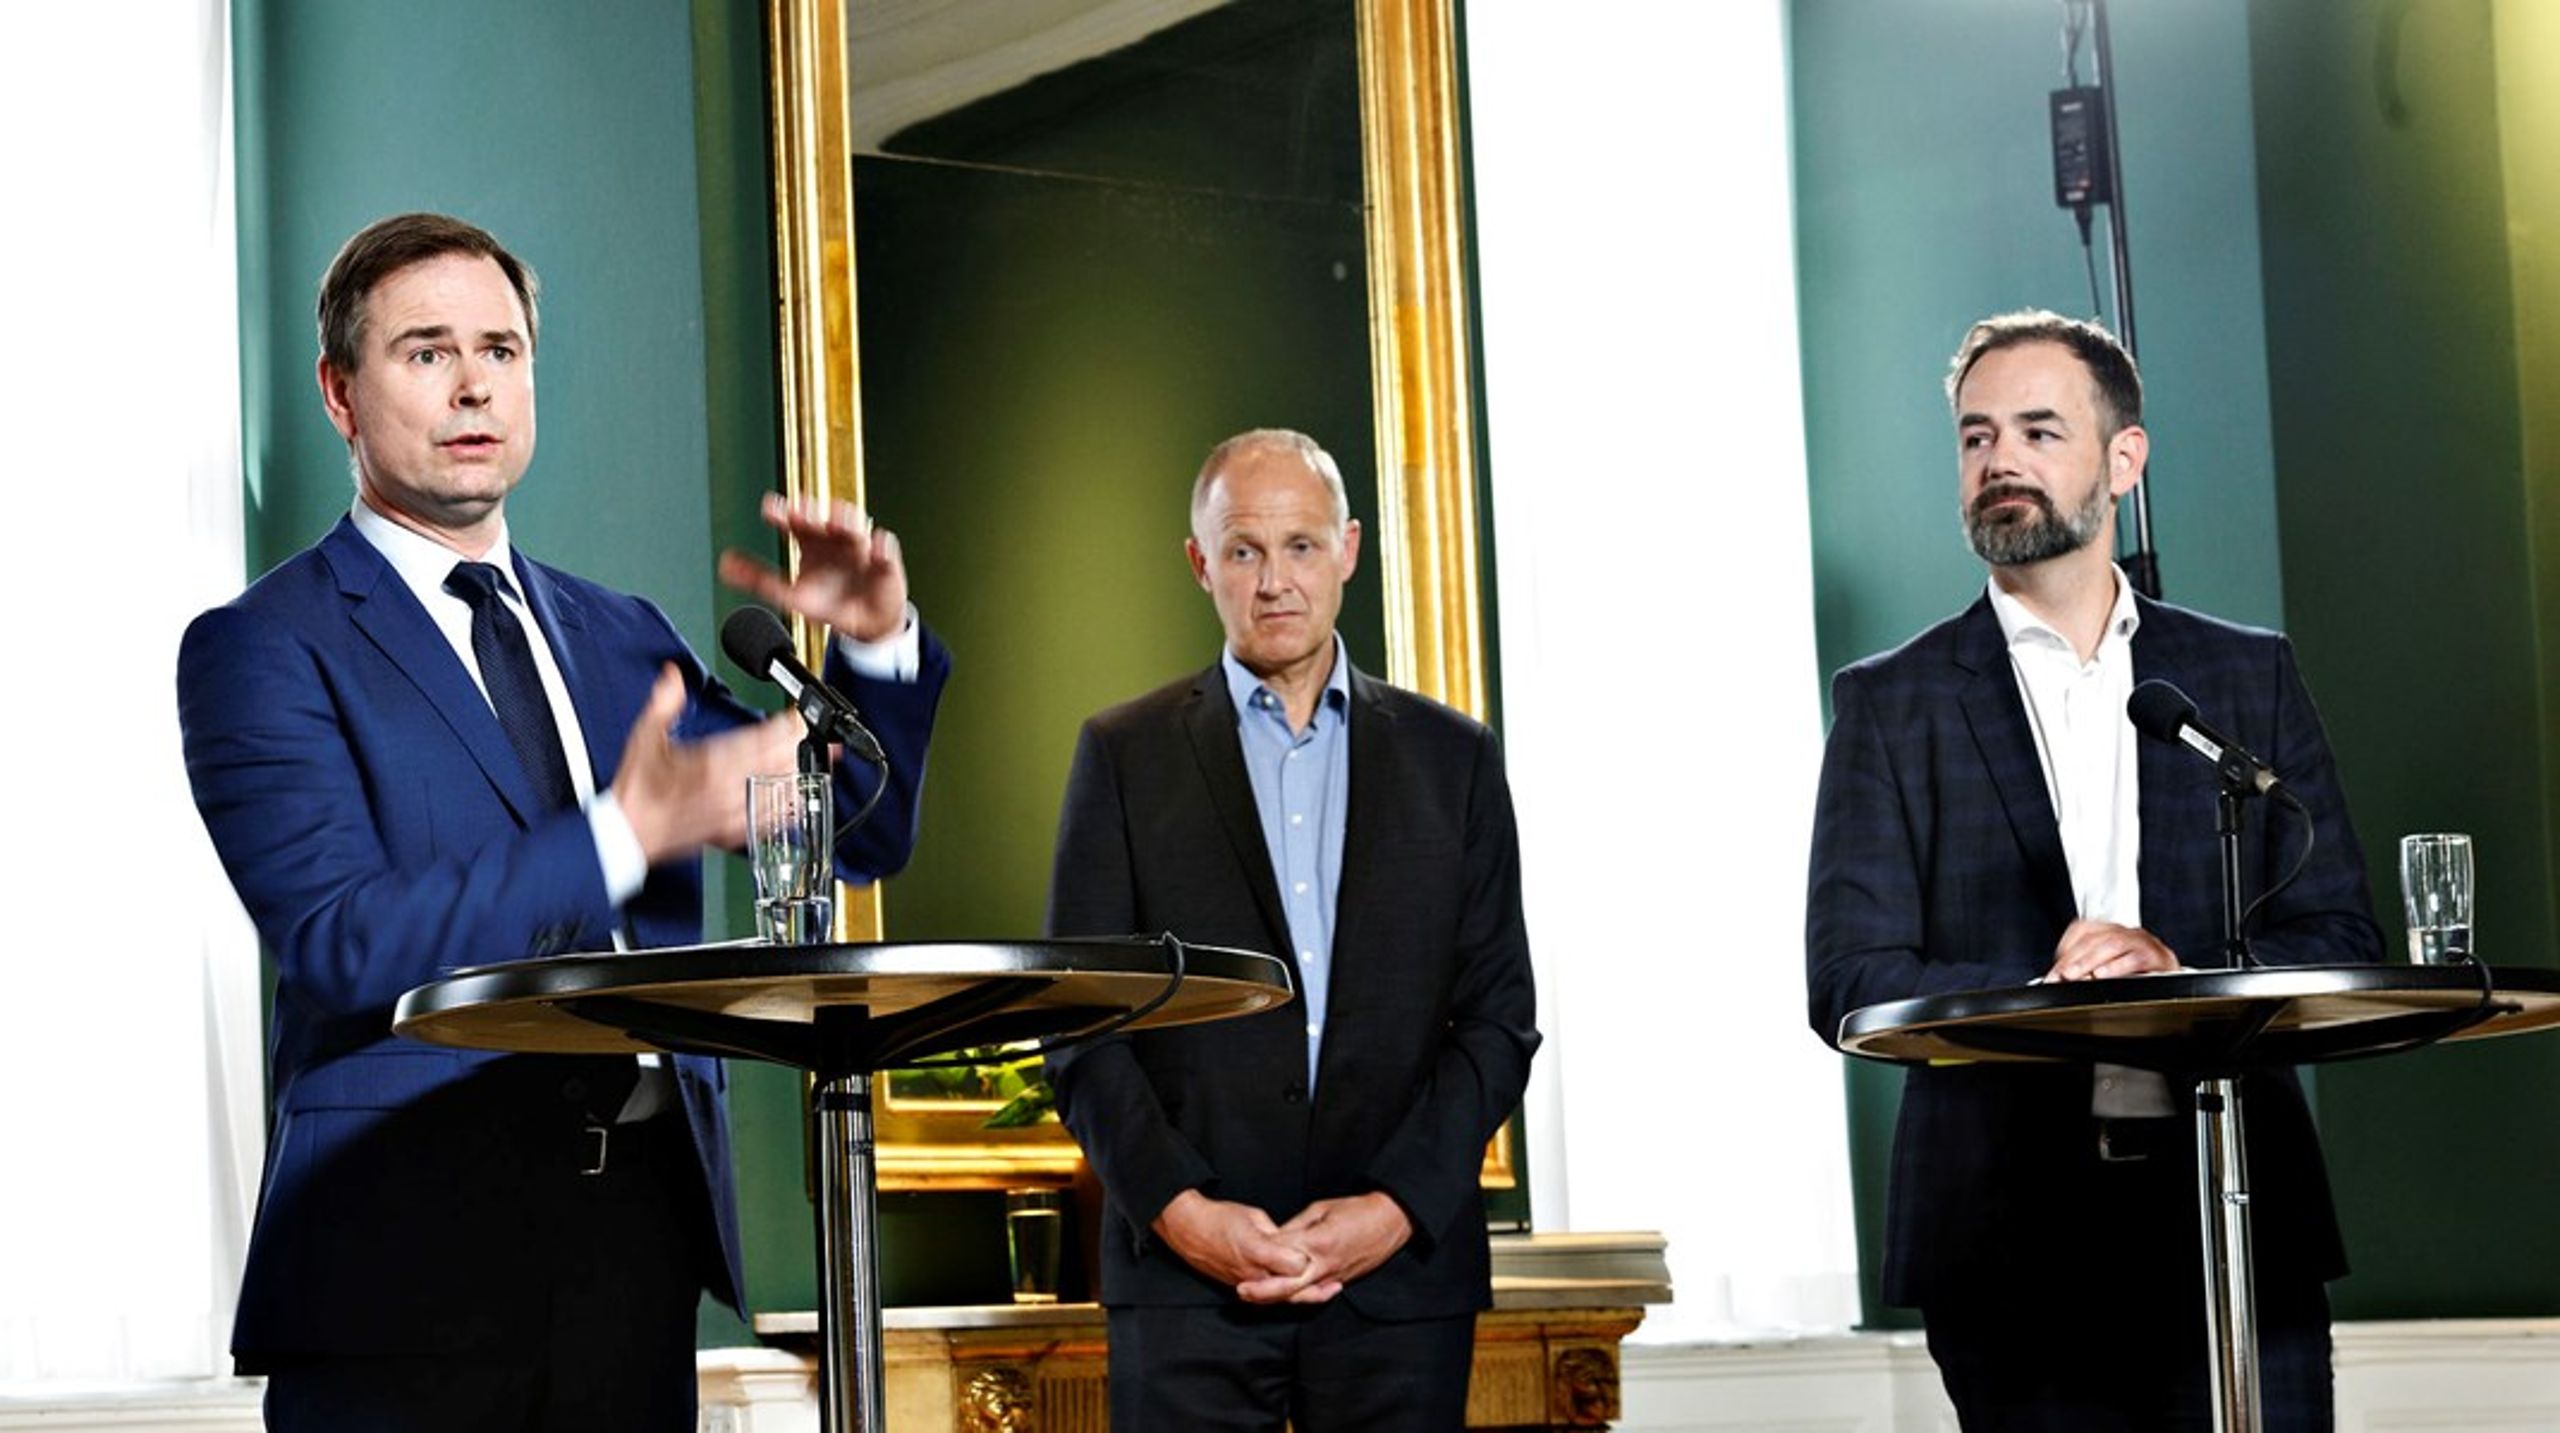 Finansminister Nicolai Wammen (S) indgik tirsdag aften en aftale om næste års kommunale økonomi med KL-formand Jacob Bundsgaard.